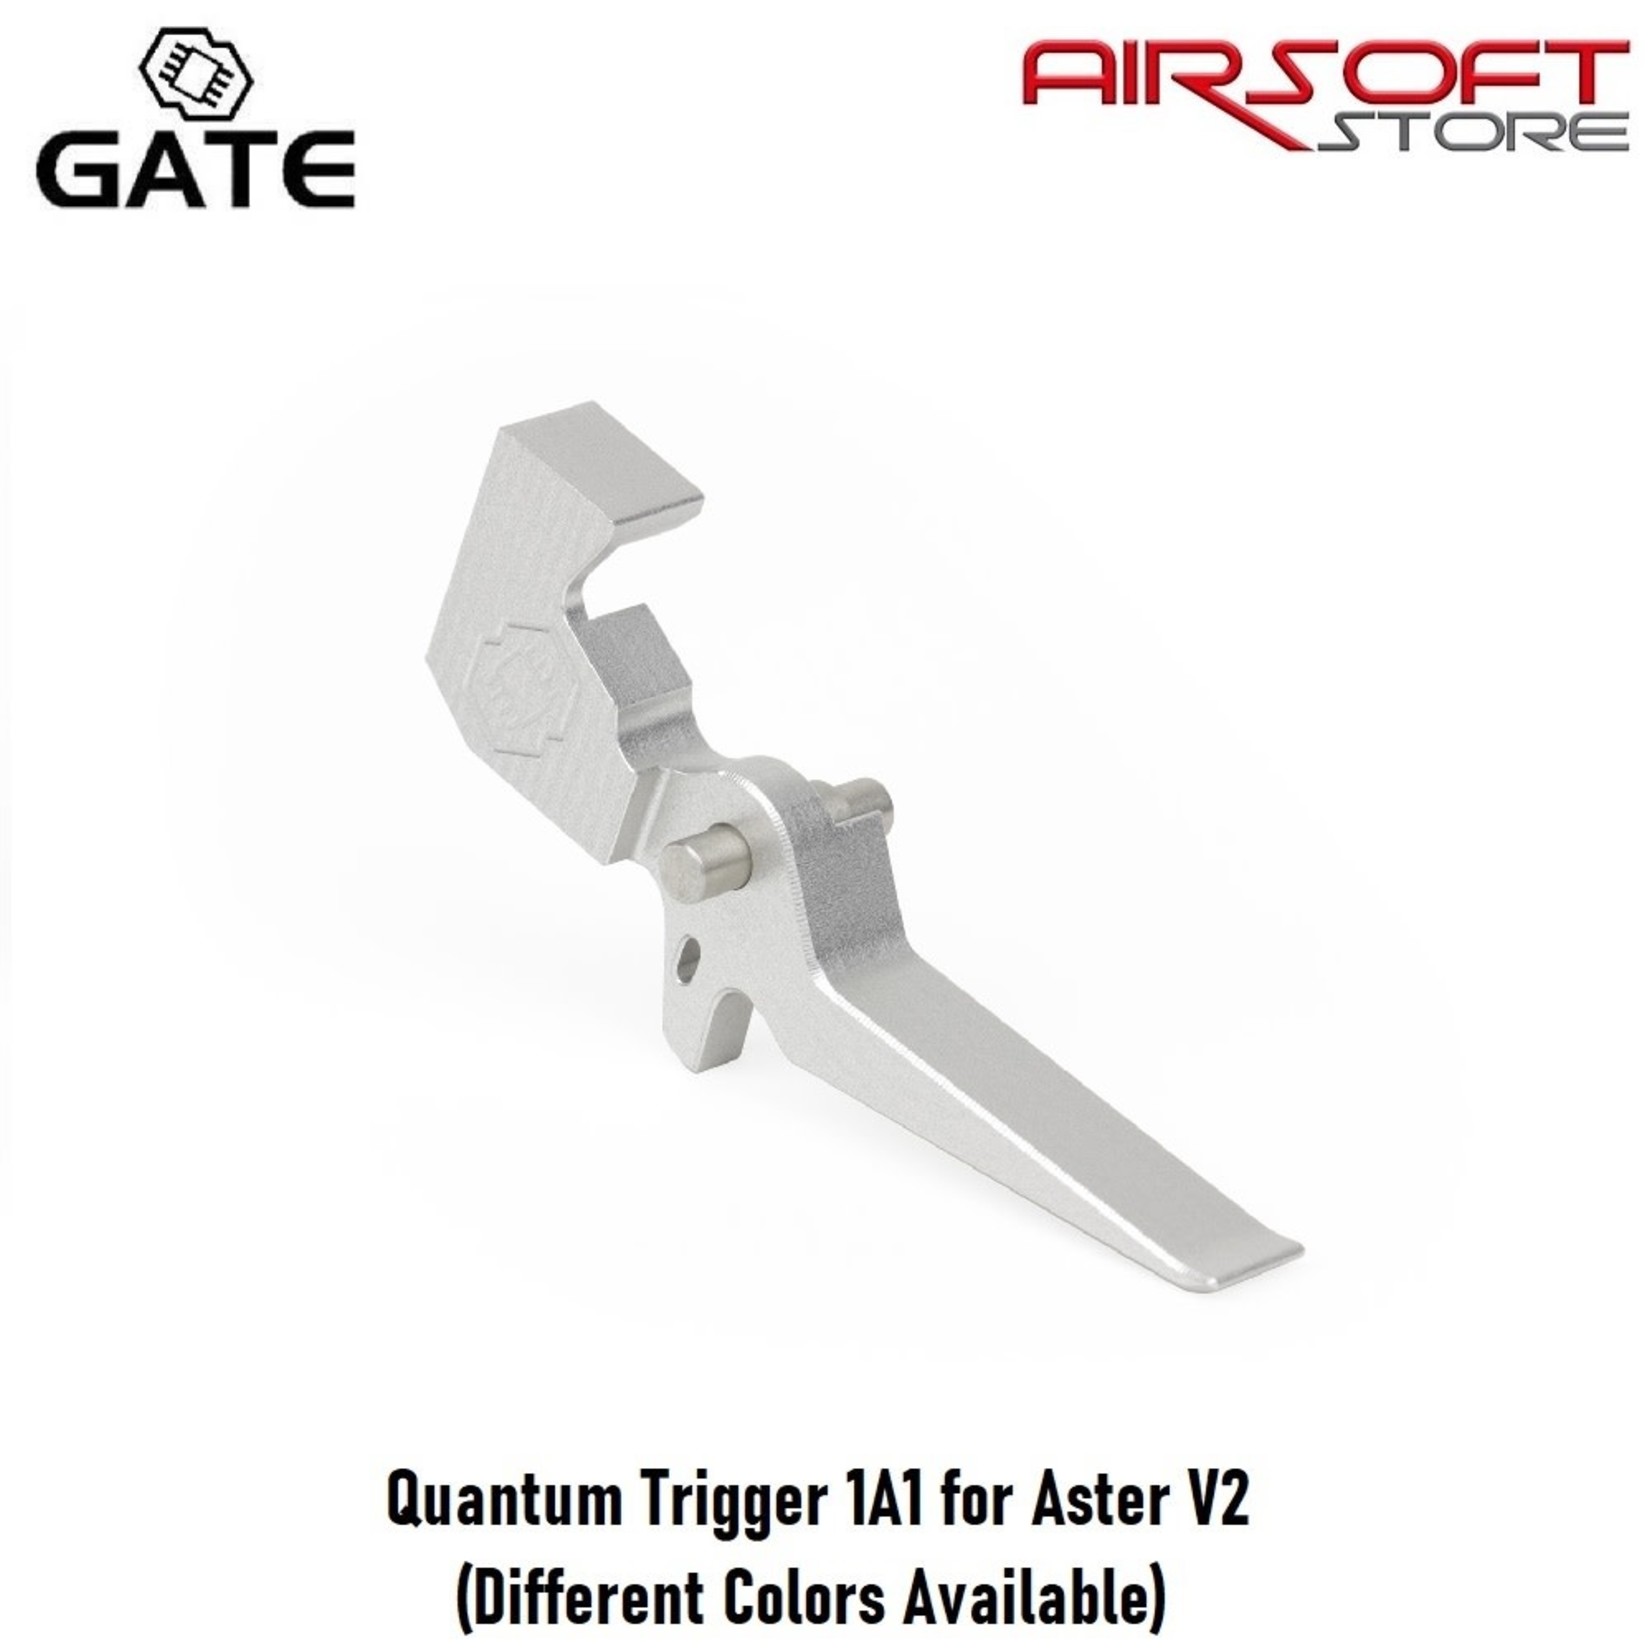 Gate Quantum Trigger 1A1 for Aster V2